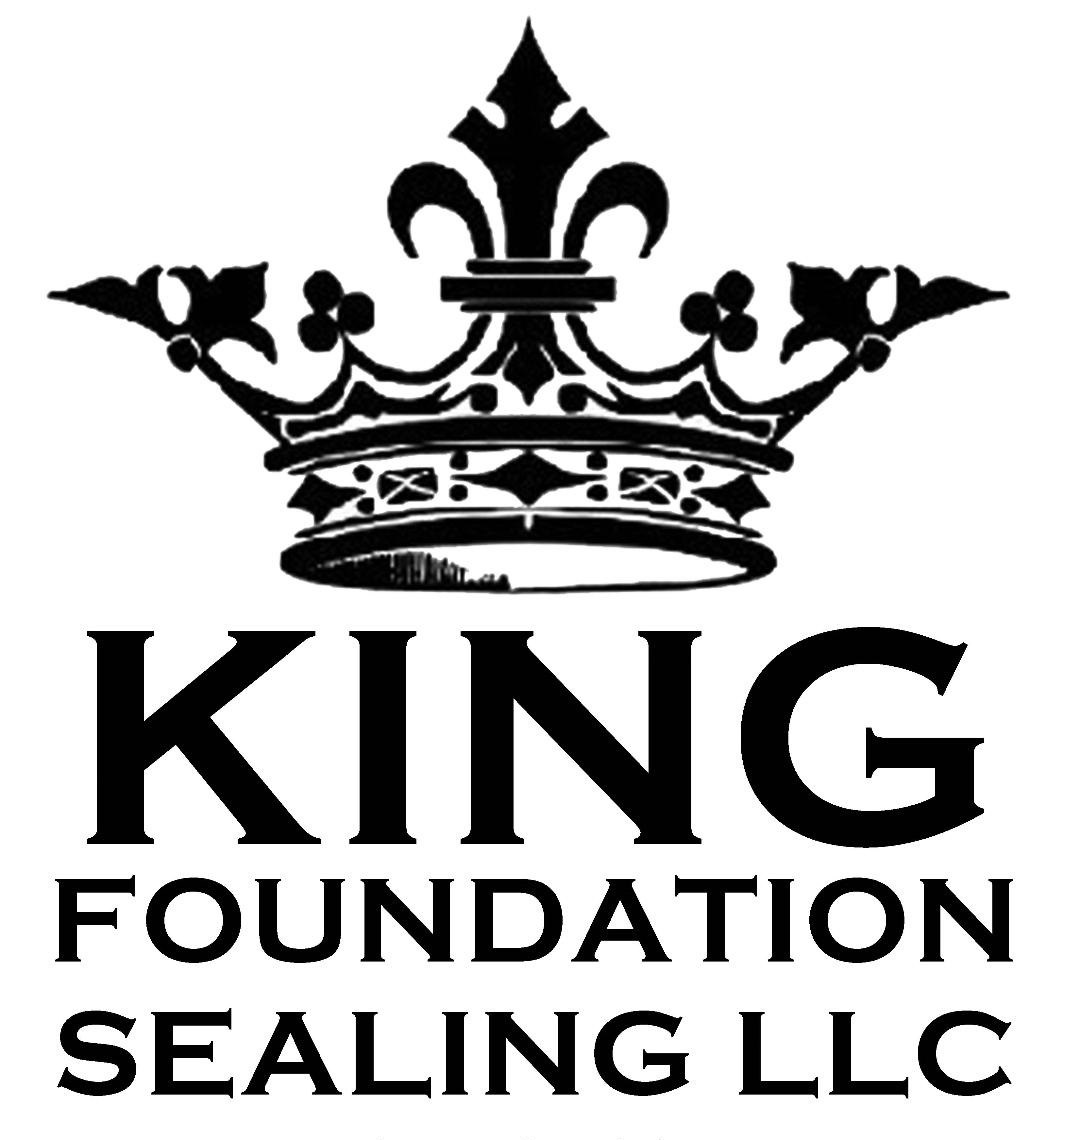 King Foundation Sealing